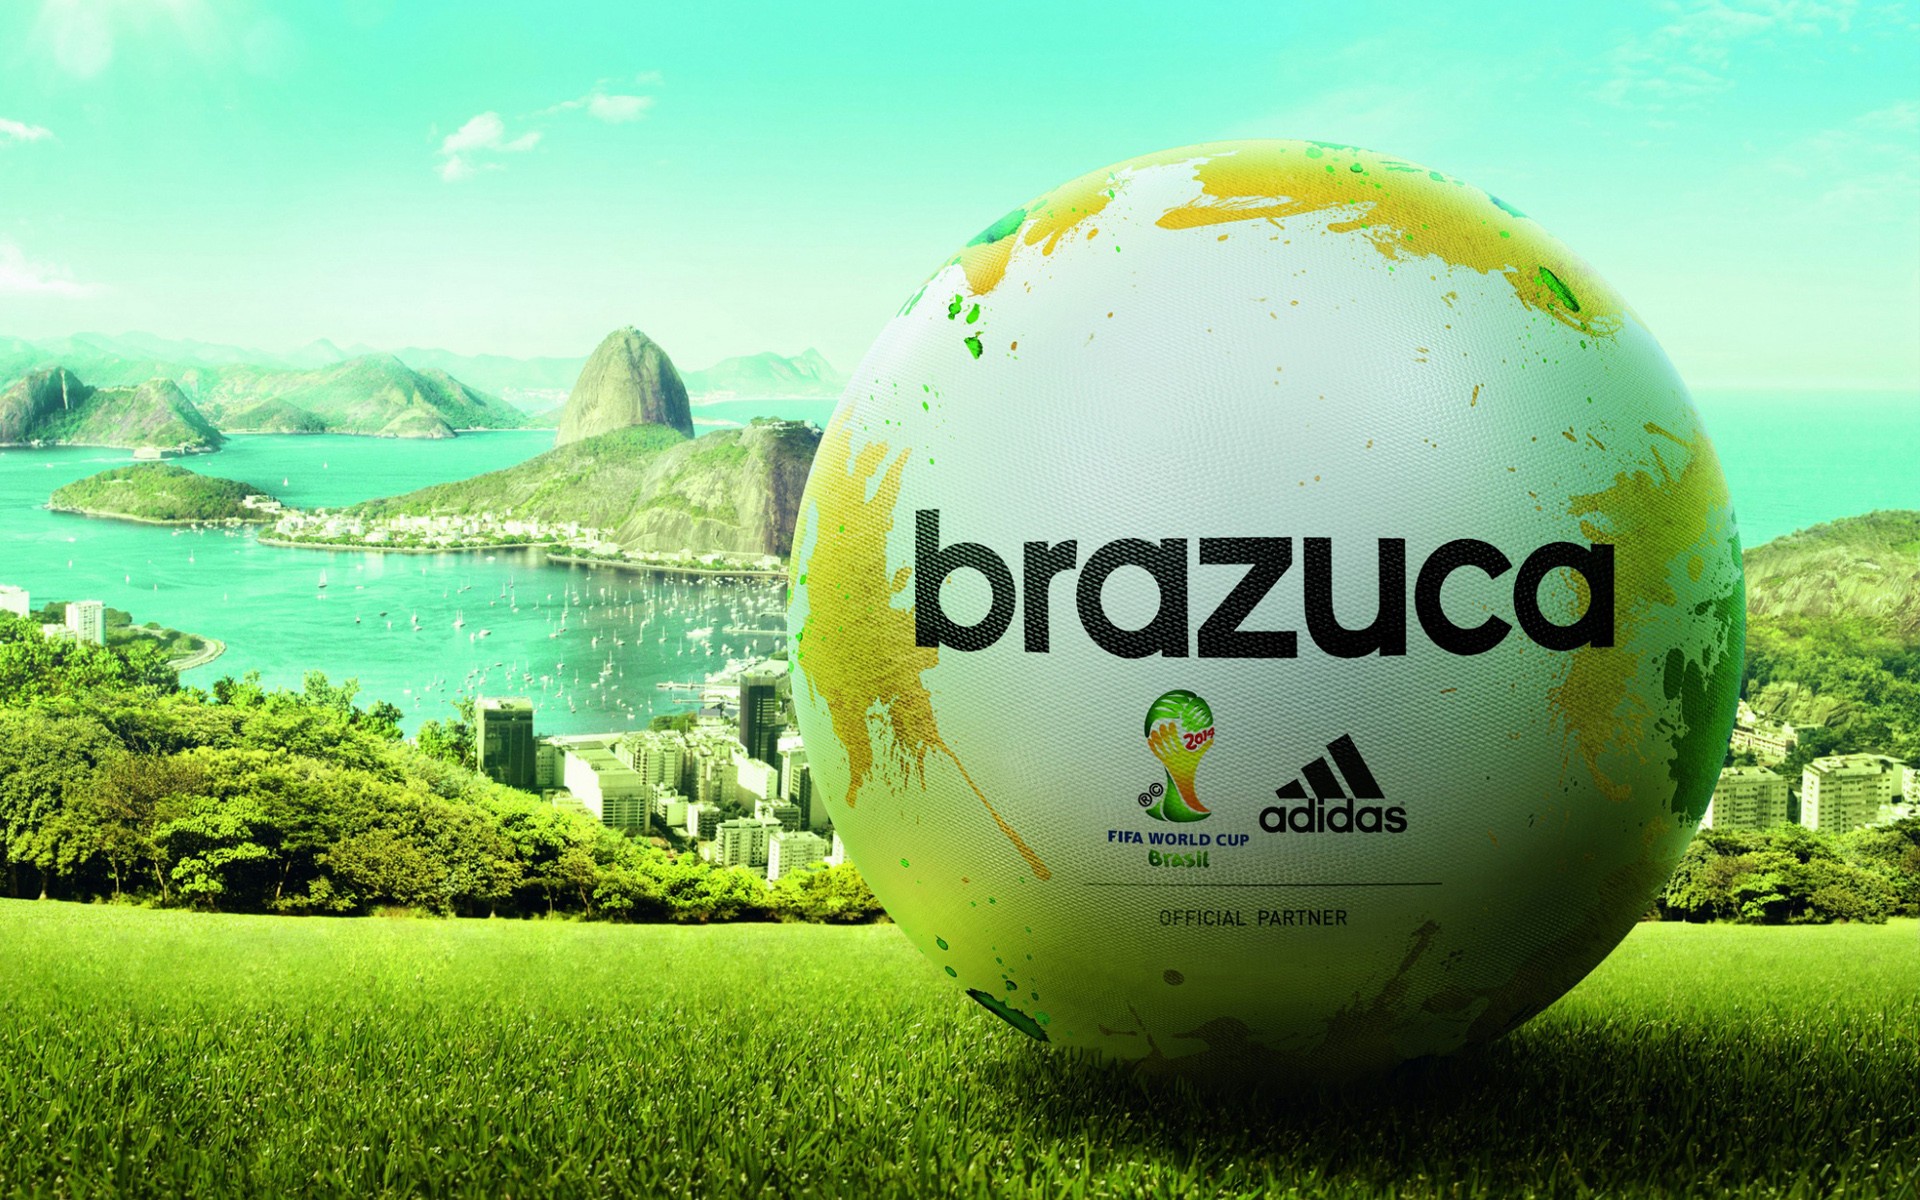 General 1920x1200 soccer ball soccer Adidas Brazil ball FIFA World Cup sport